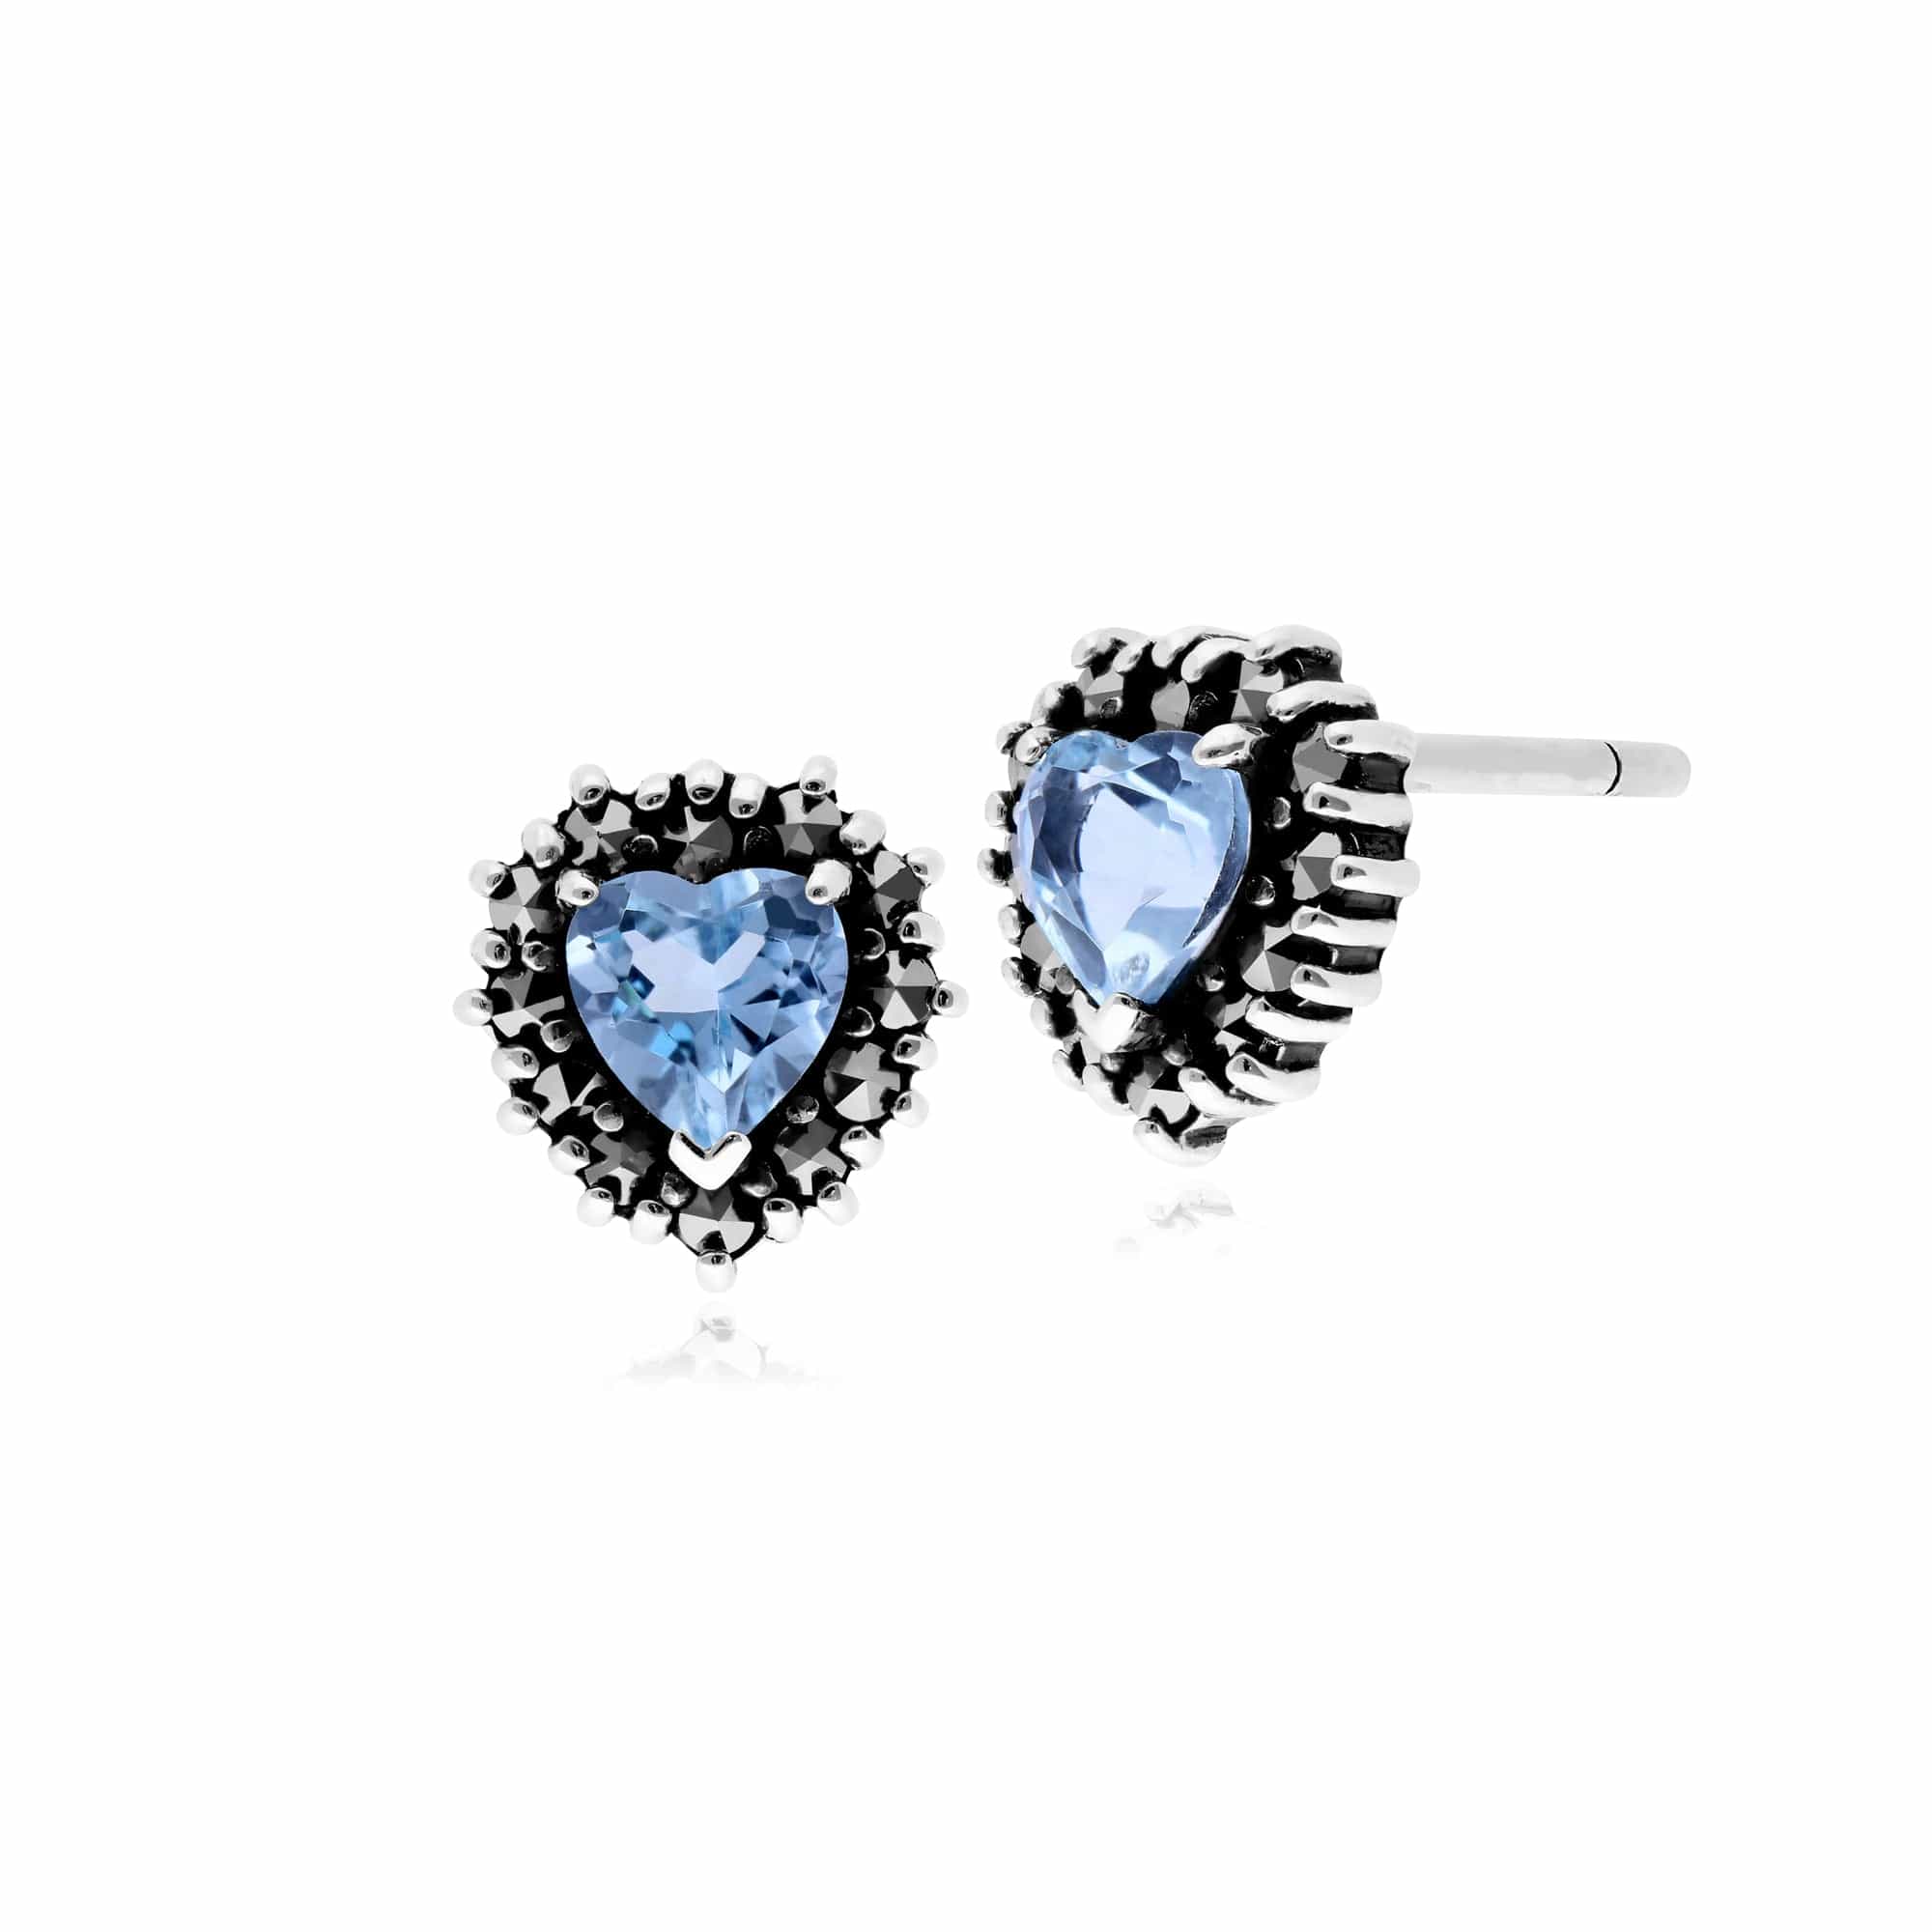 Classic Heart Blue Topaz & Marcasite Halo Heart Stud Earrings in 925 Sterling Silver - Gemondo